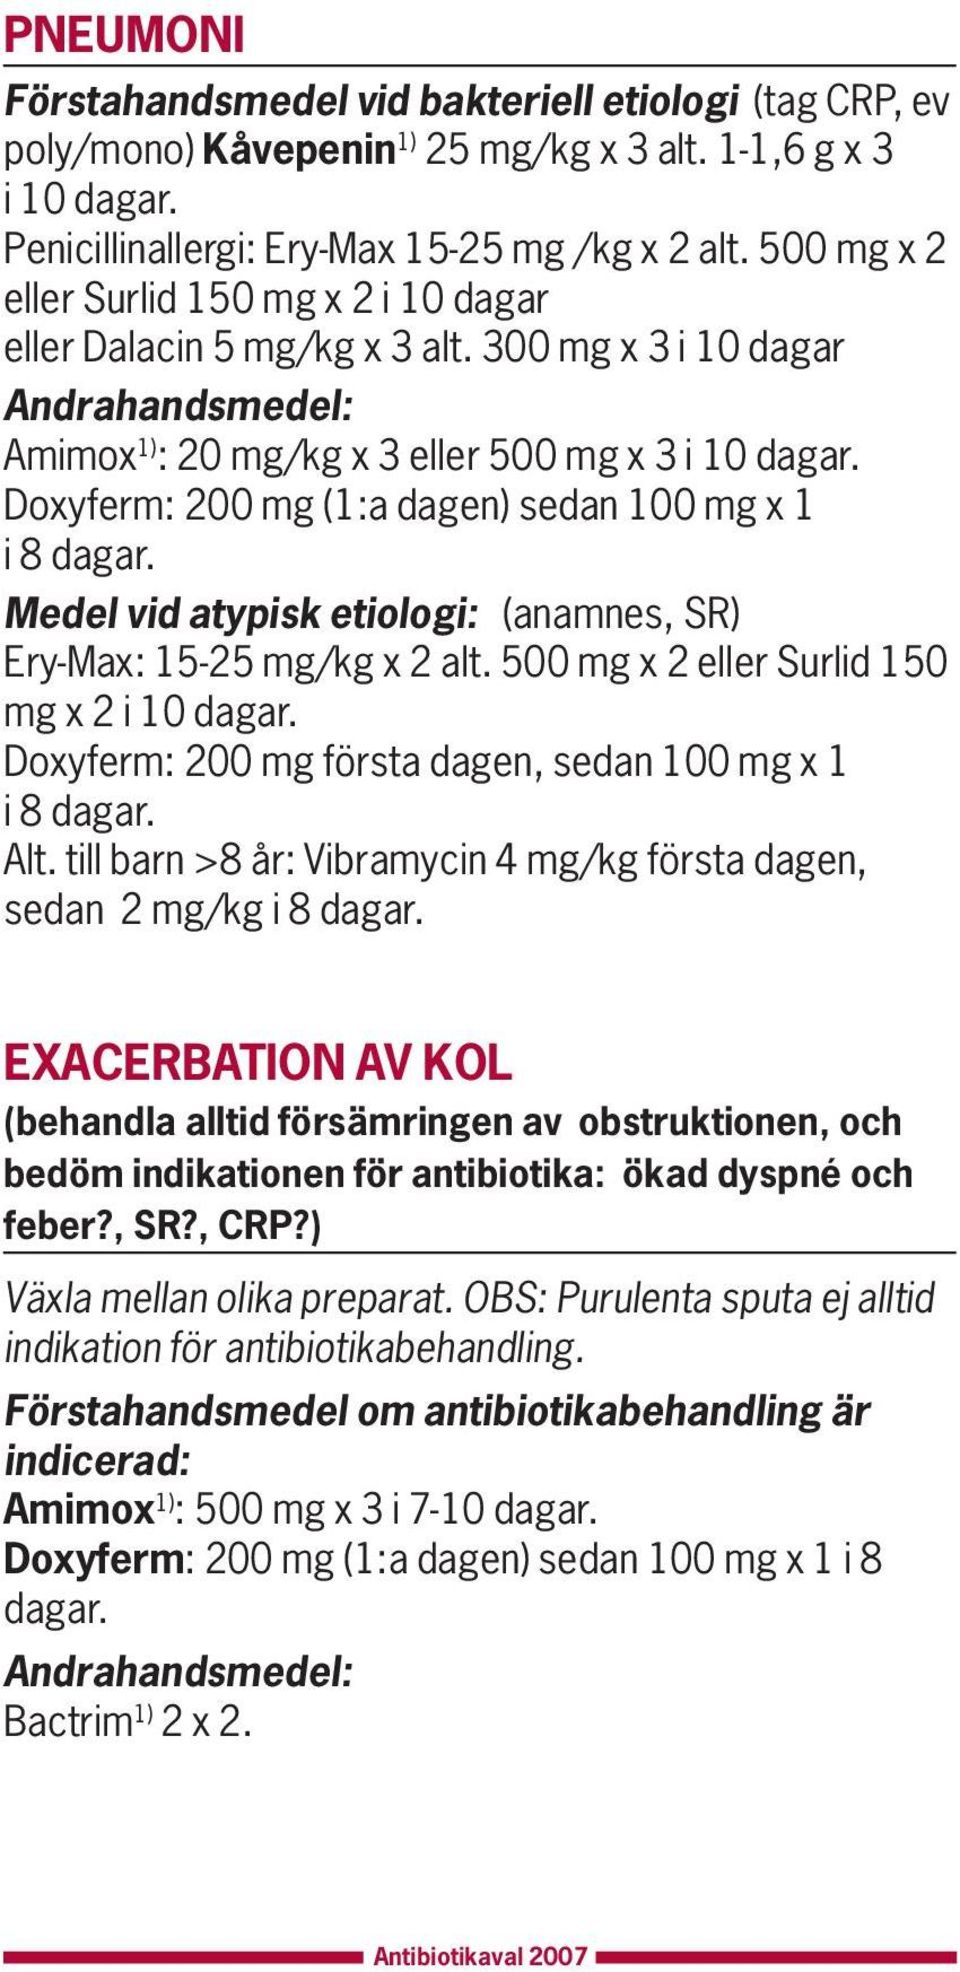 300 mg x 3 i 10 dagar Amimox 1) : 20 mg/kg x 3 eller 500 mg x 3 i 10 Doxyferm: 200 mg (1:a dagen) sedan 100 mg x 1 i 8 Medel vid atypisk etiologi: (anamnes, SR) Ery-Max: 15-25 mg/kg x 2 alt.